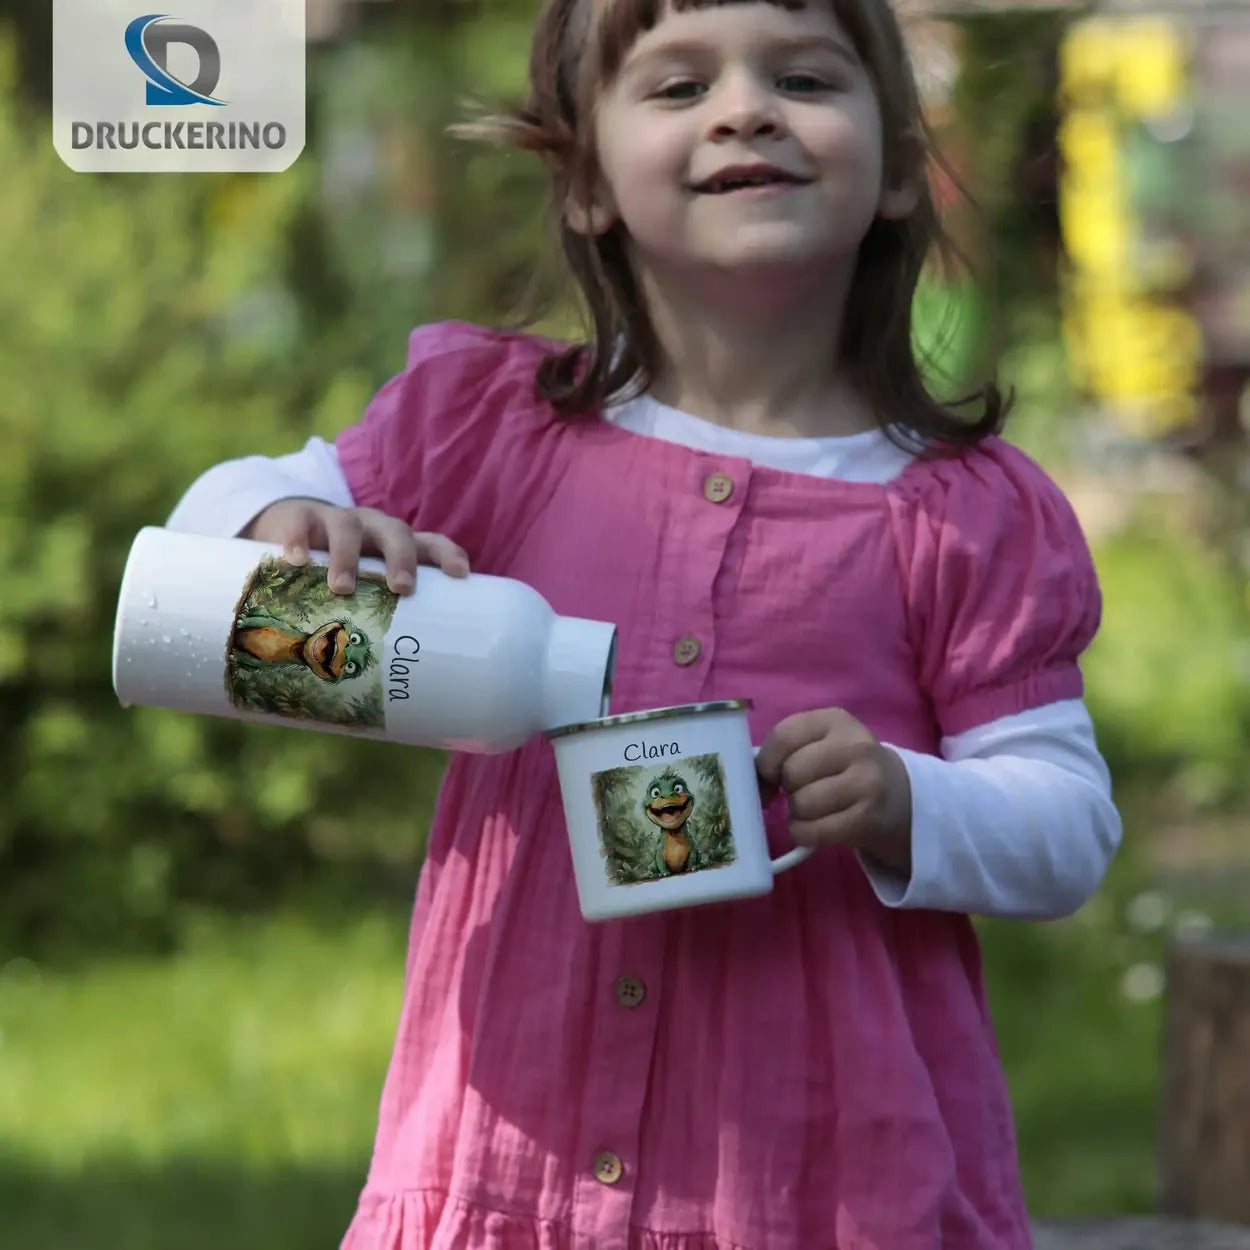 Zauberdrachen Emaille Tasse für Kinder personalisiert Emailletasse Druckerino   